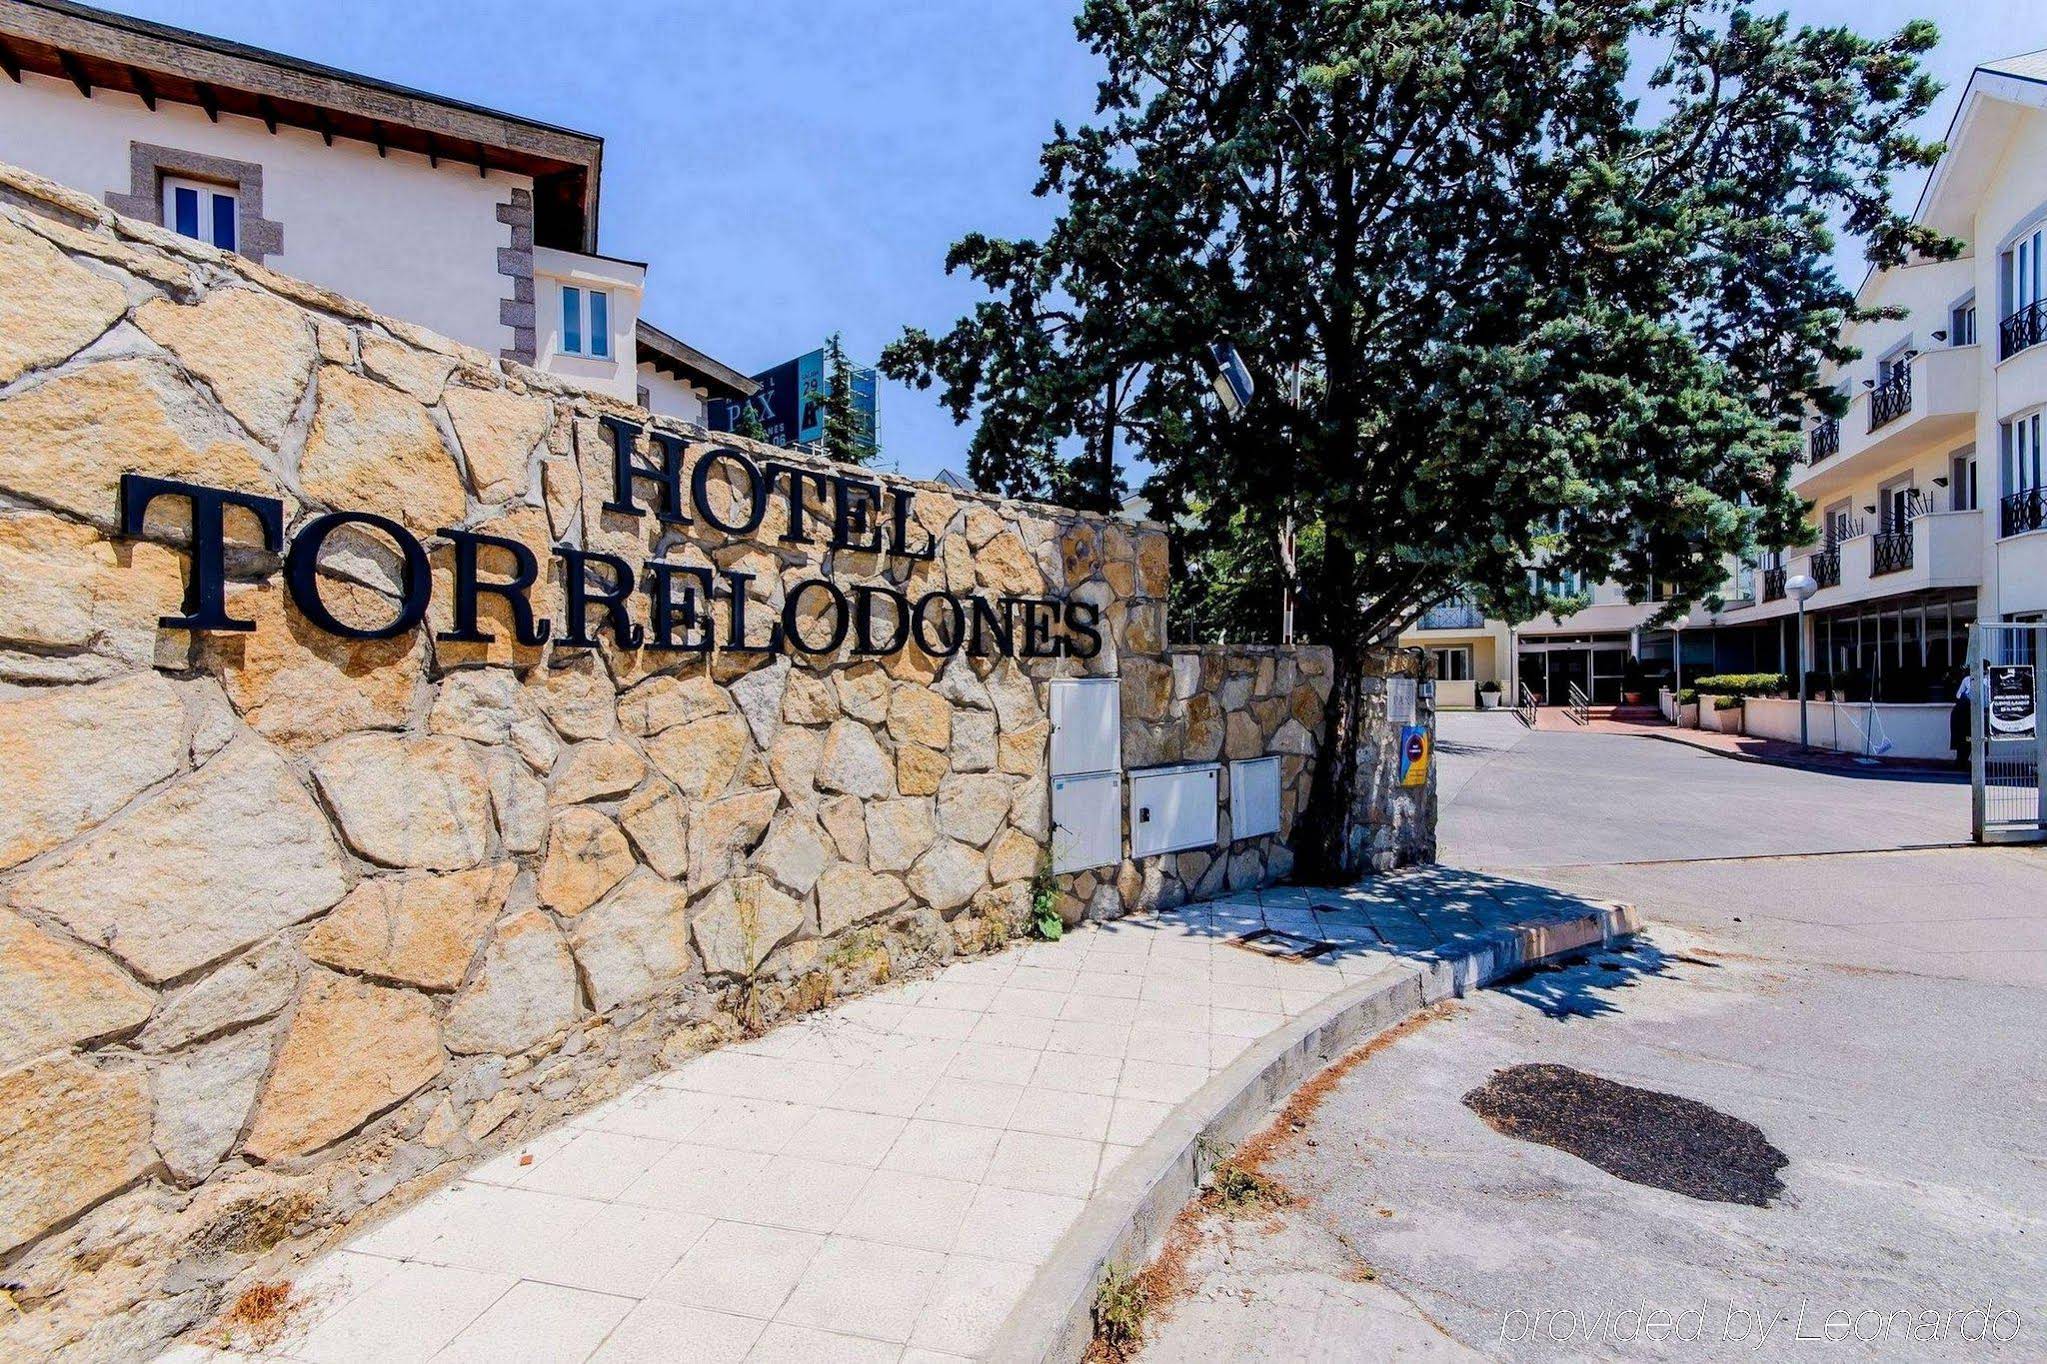 Hotel Pax Torrelodones